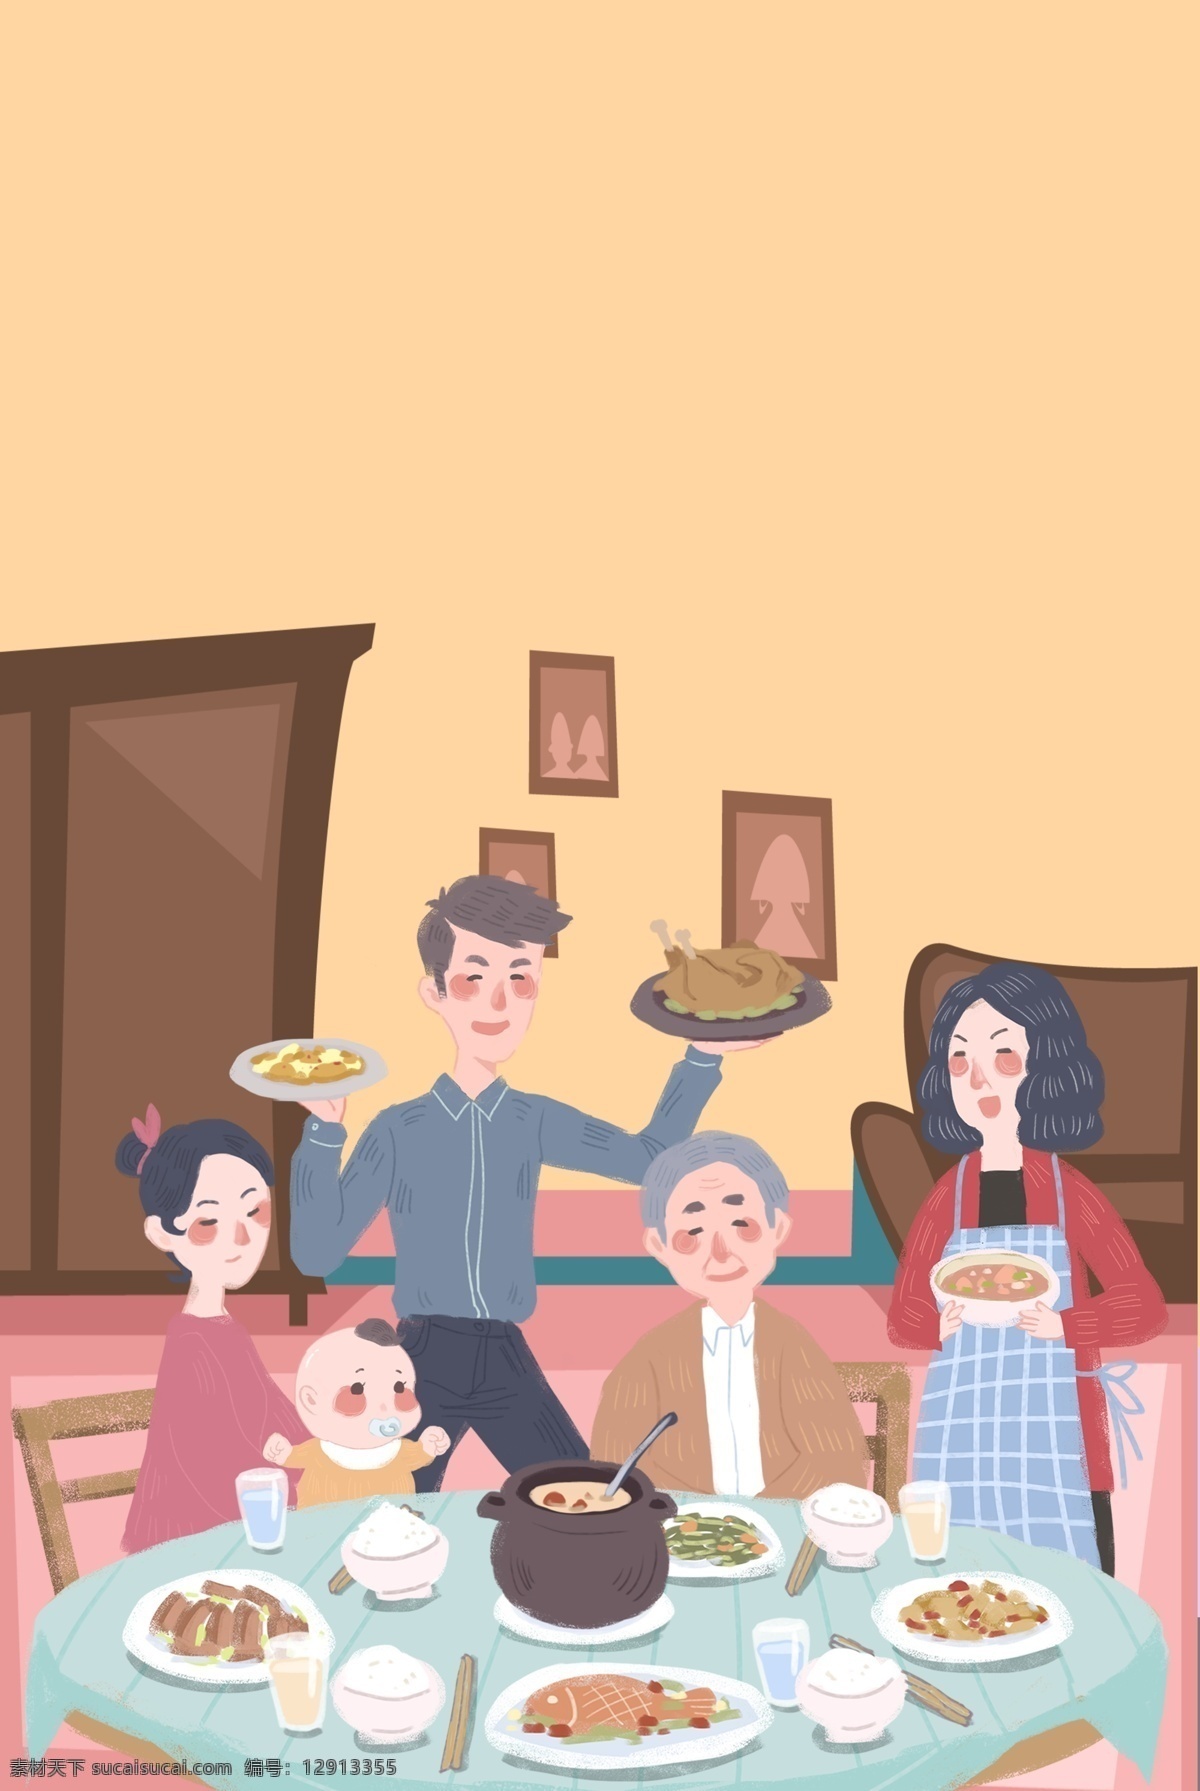 家庭 聚餐 温馨 背景 假期生活 文艺 简约 插画